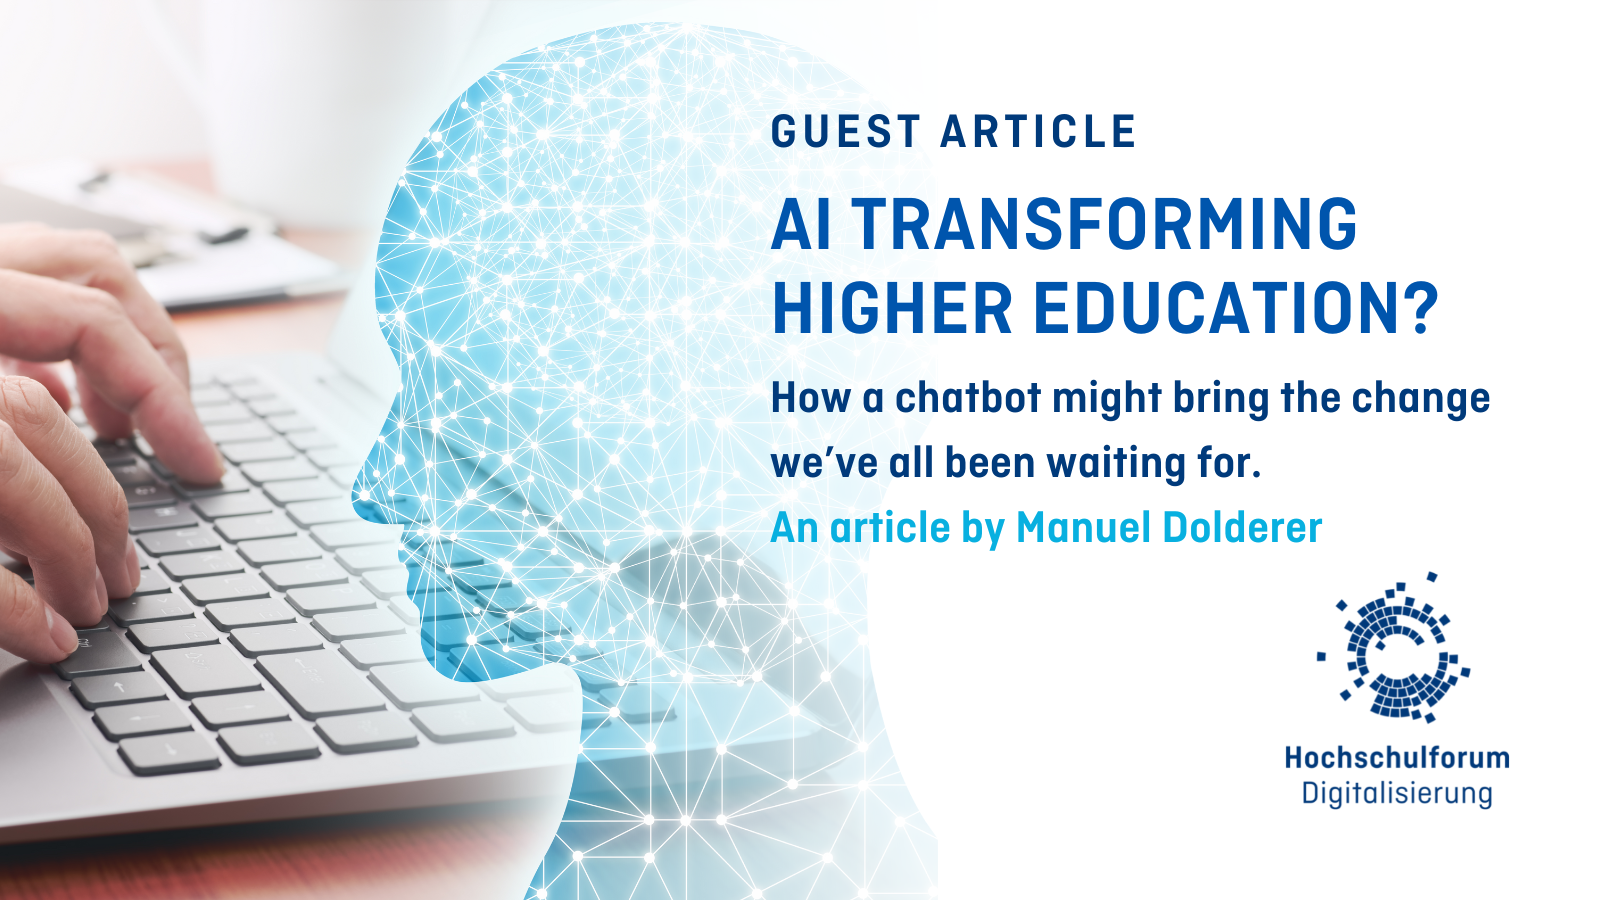 Titelbild zum Blogbeitrag auf Englisch: AI transforming higher education? How a chatbot might bring the change we’ve all been waiting for. Logo: Hochschulforum Digitalisierung